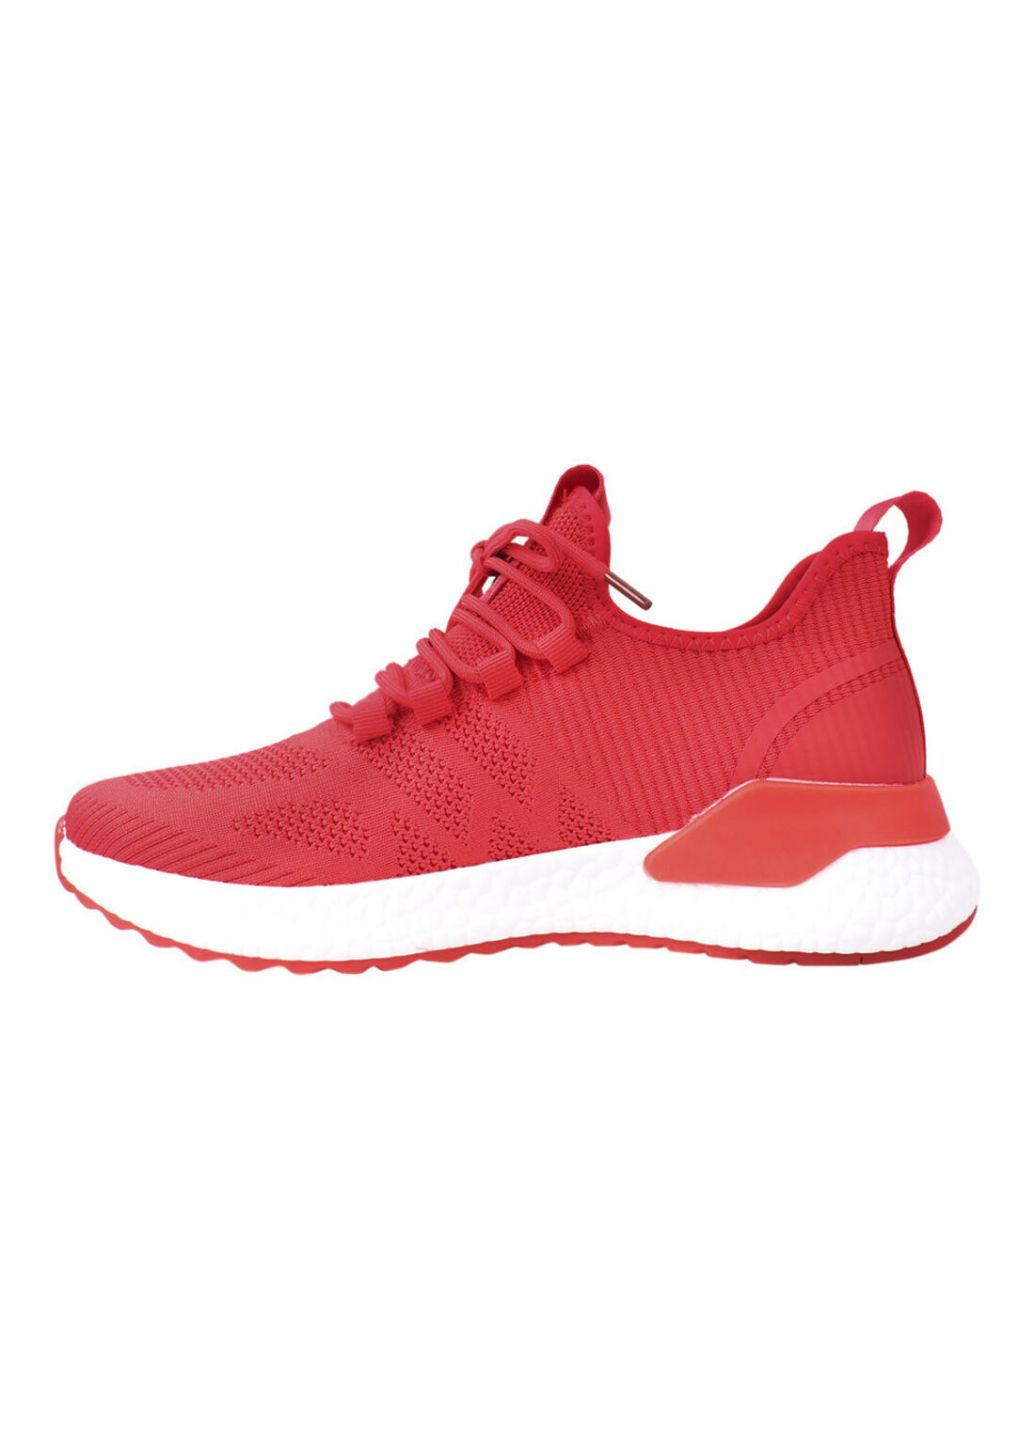 Червоні кросівки чоловічі з текстилю, на низькому ходу, на шнурівці, червоні, Lifexpert 600-21DK